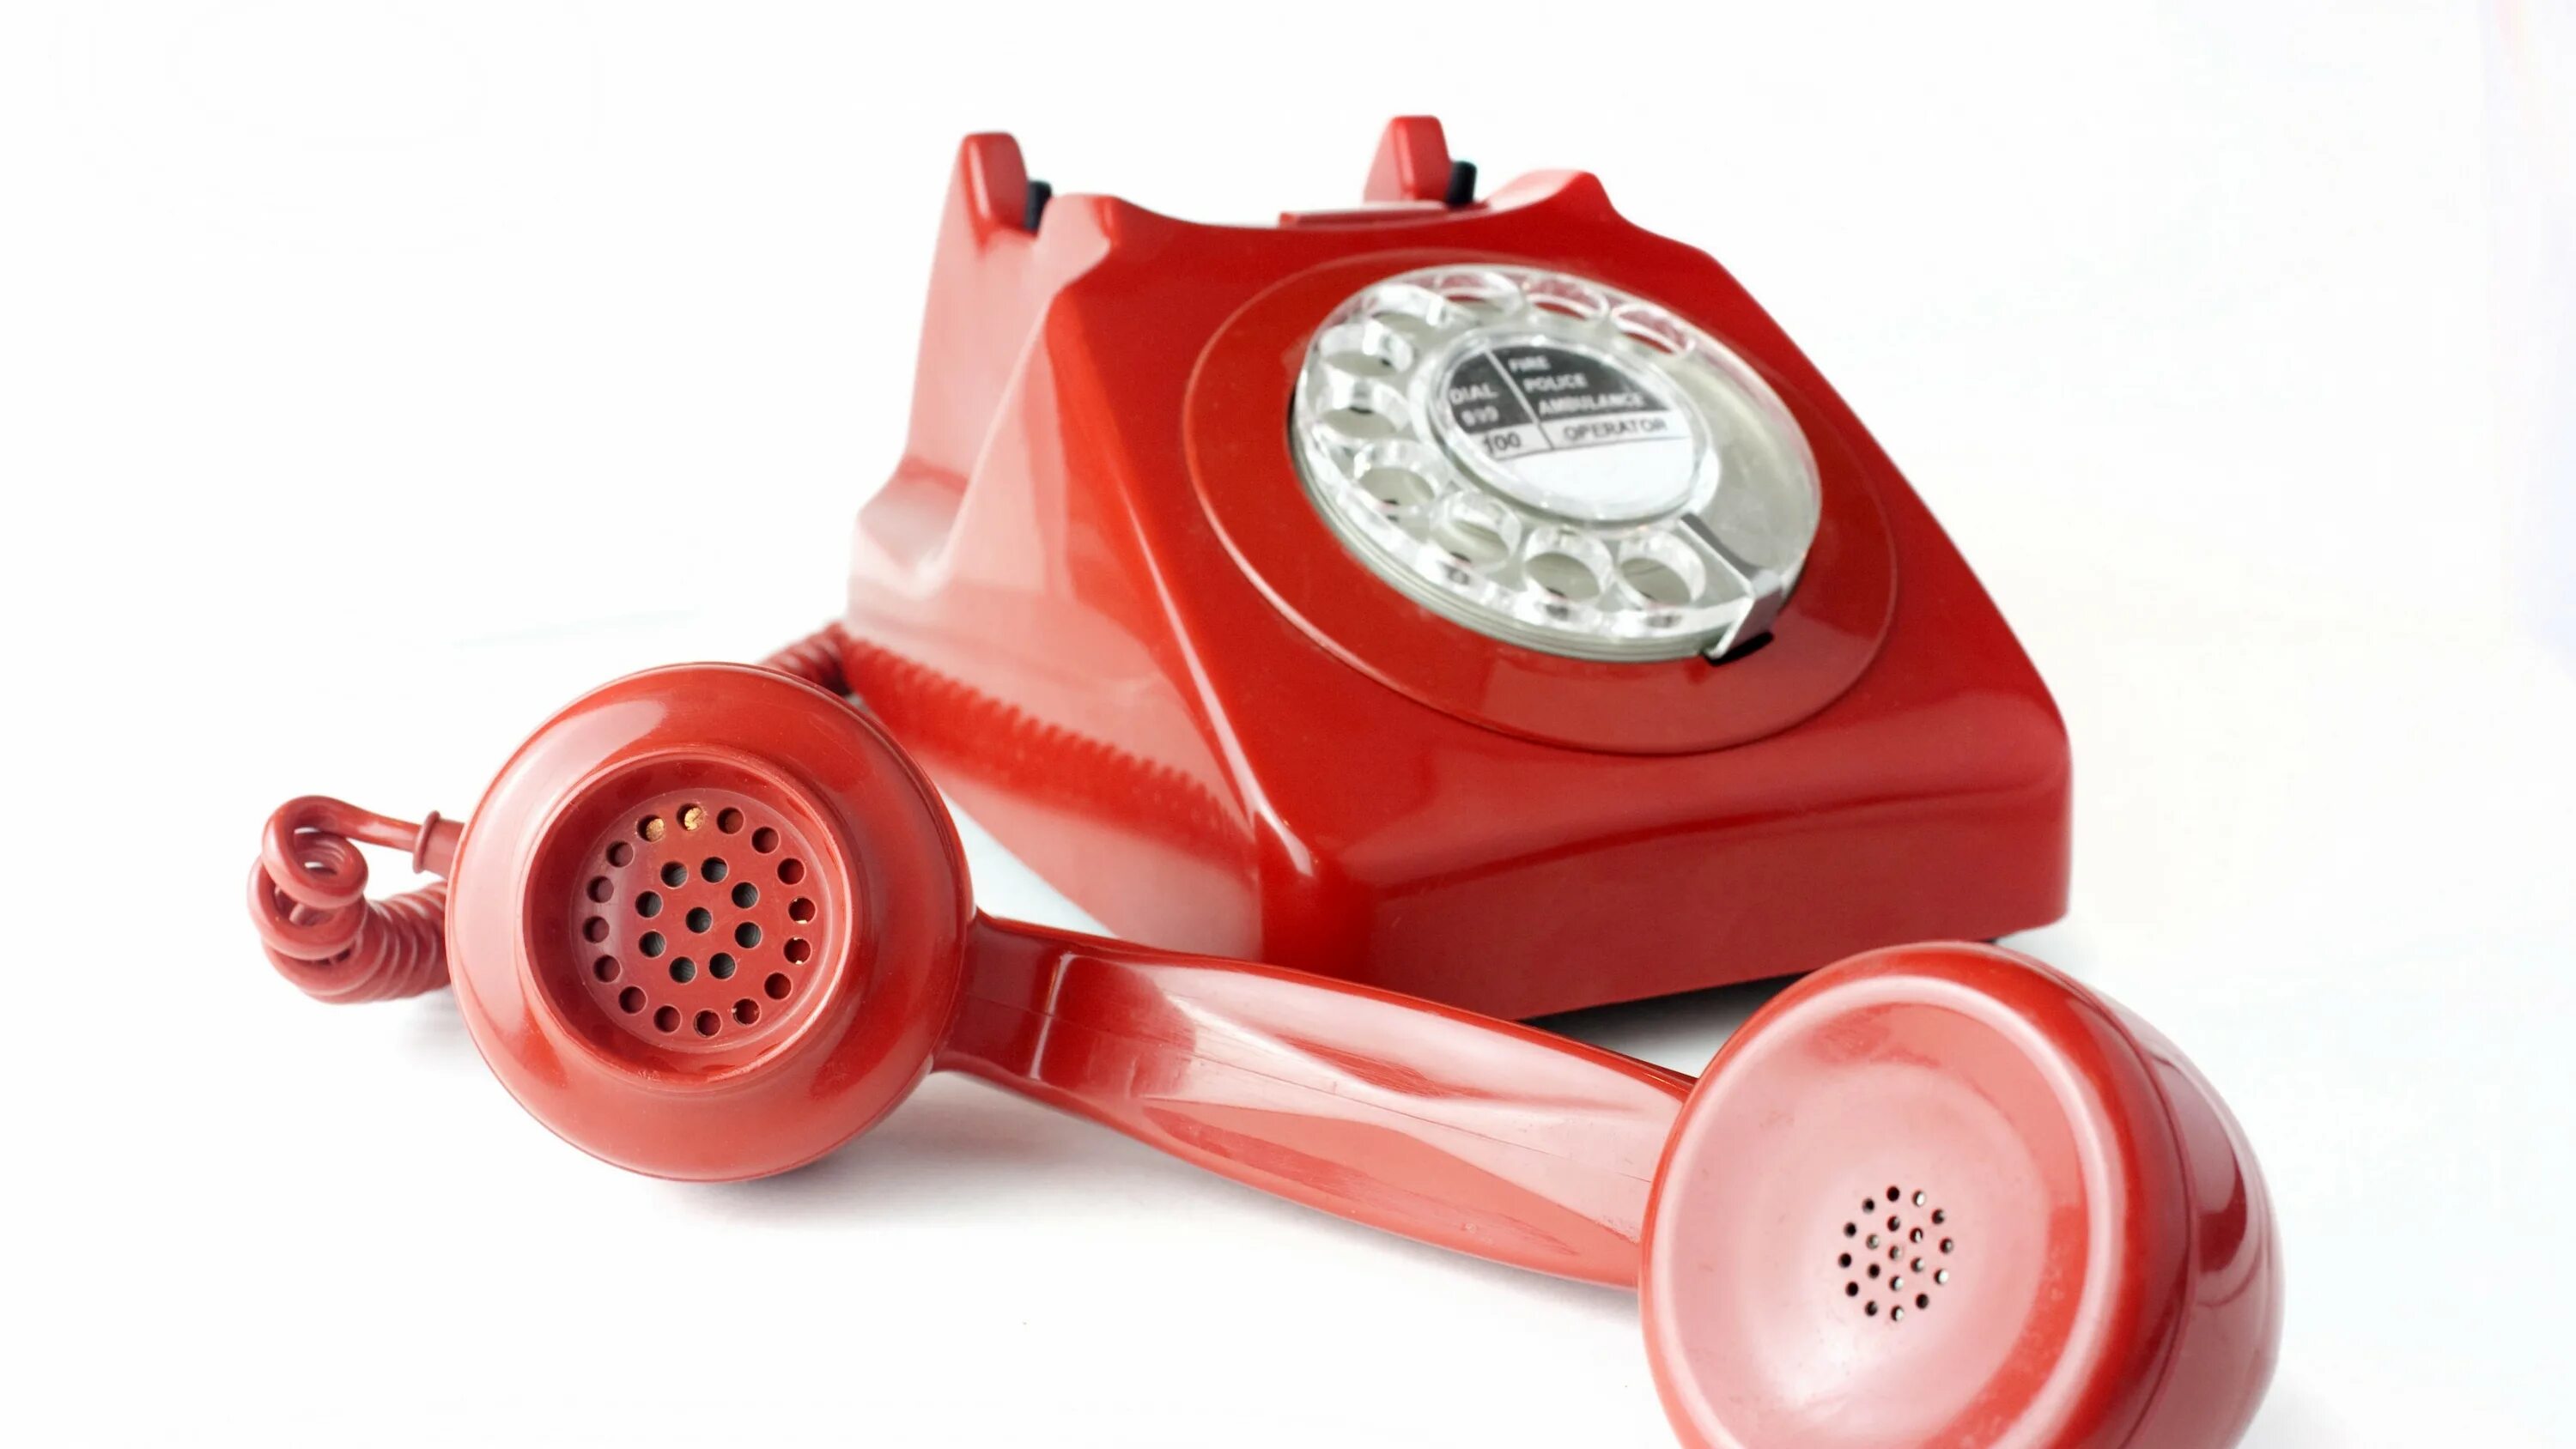 Ооо красный телефон. Телефонная трубка. Красный телефон. Домашний телефон трубка. Городской телефон.